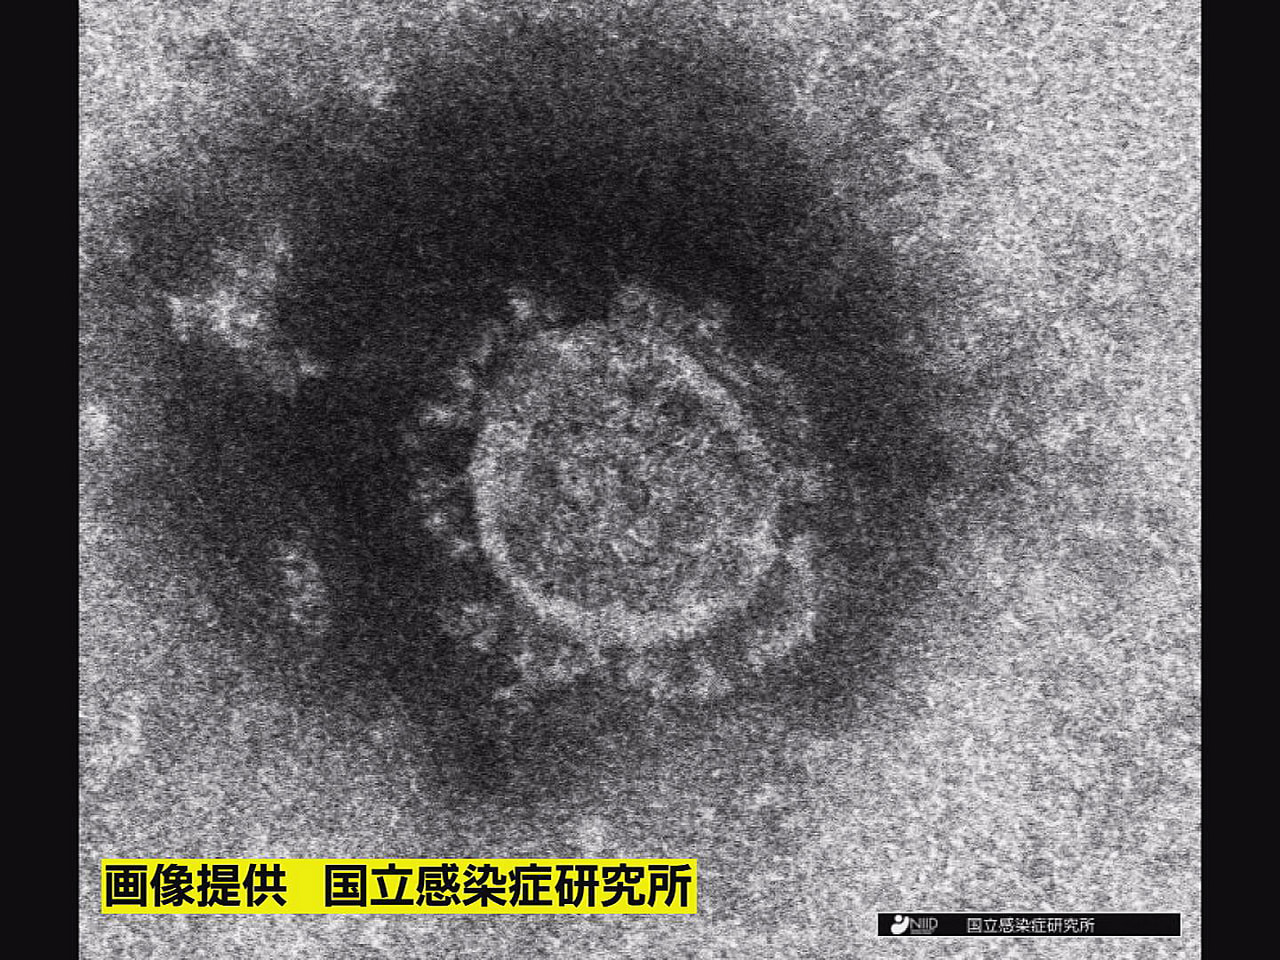 岐阜県と岐阜市は１８日、新型コロナウイルスの感染者が新たに６６５人確認されたと発...